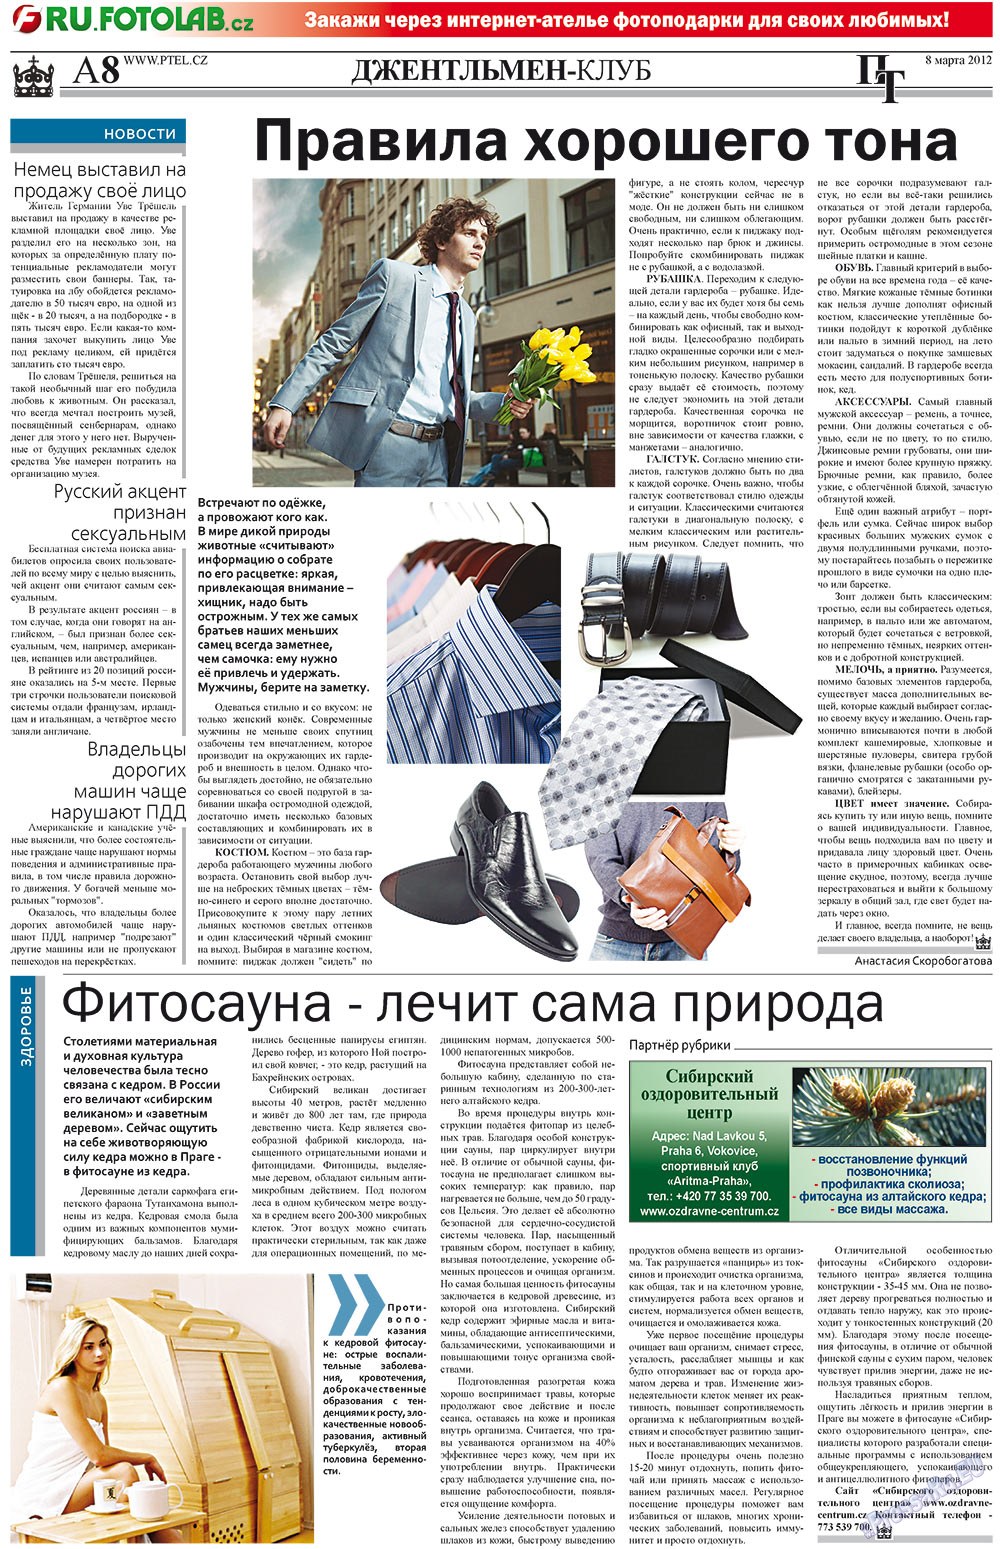 Пражский телеграф (газета). 2012 год, номер 10, стр. 8